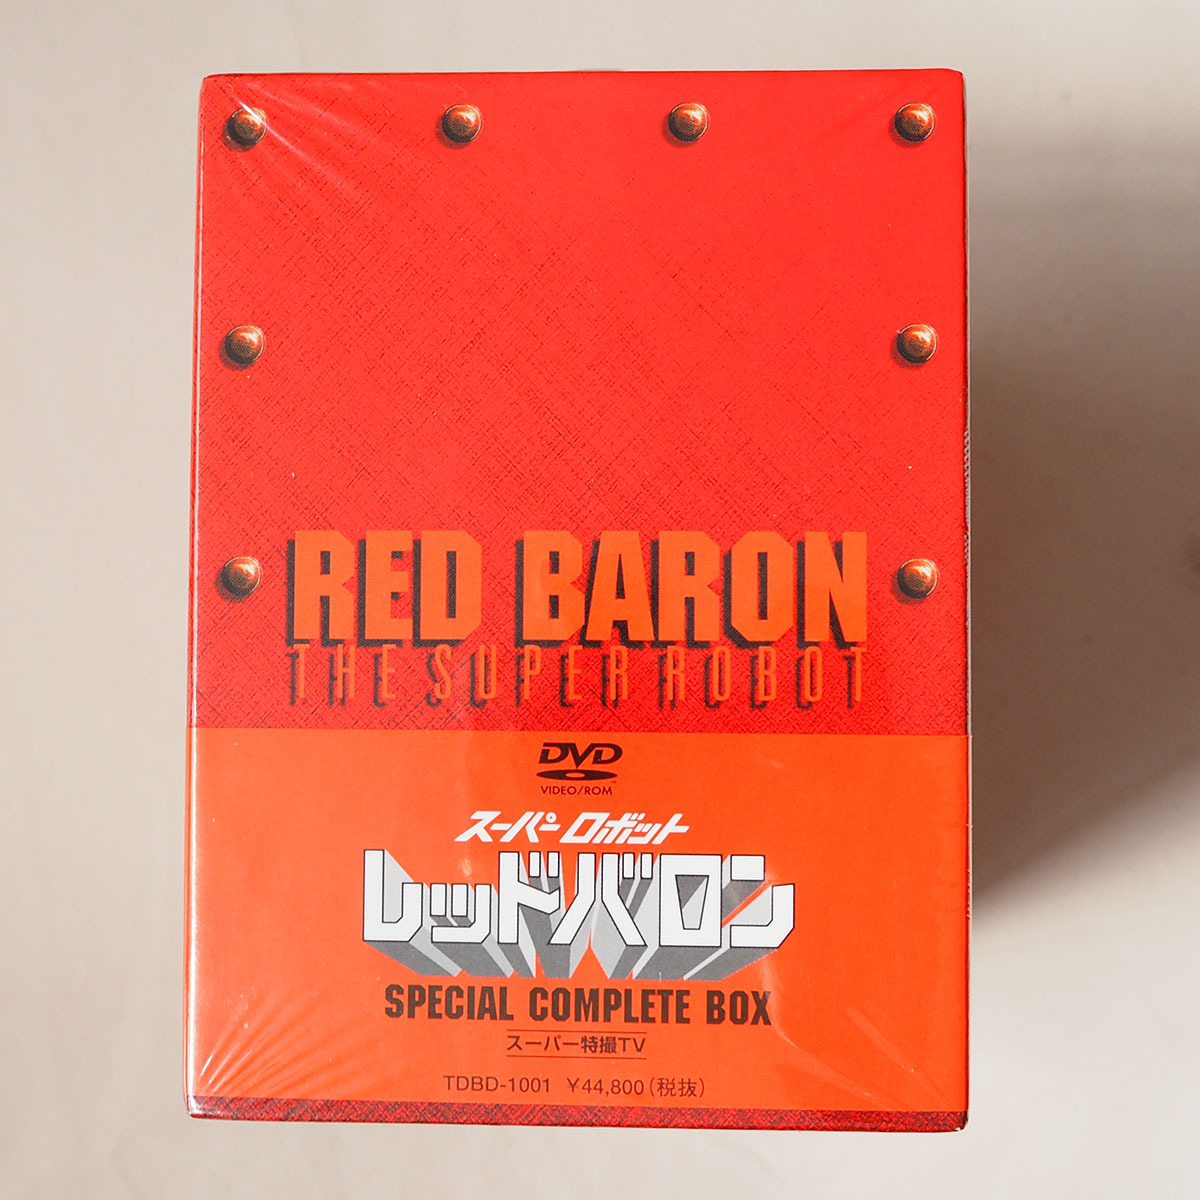 ◆ スーパーロボット レッドバロン スペシャルコンプリートボックス RED BARON SPECIAL COMPLETE BOX 送料無料 ◆の画像4